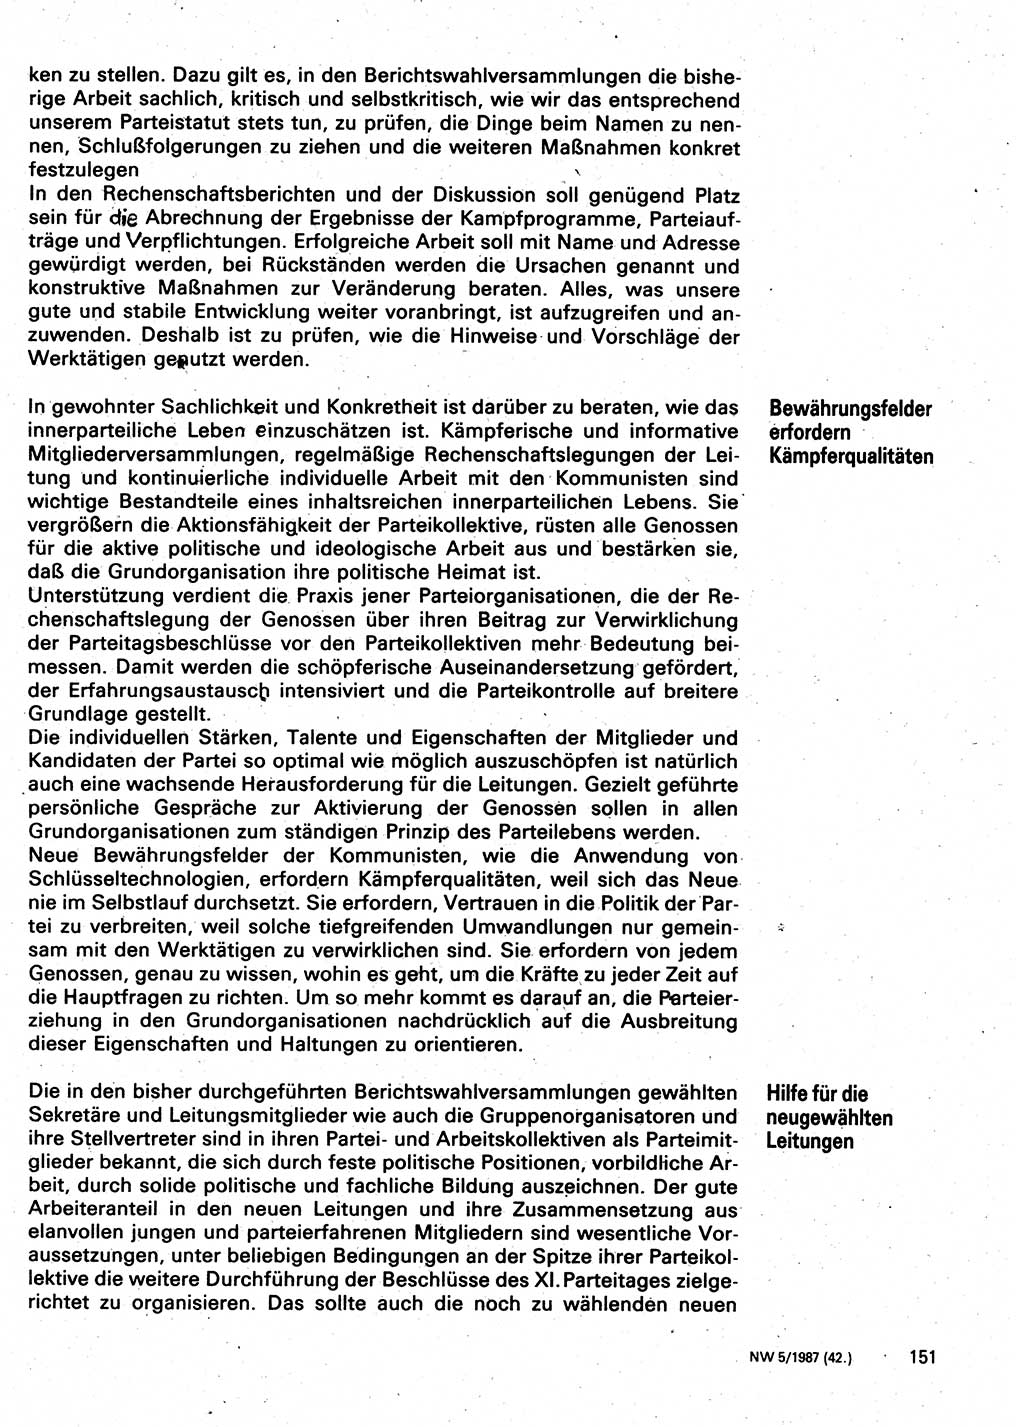 Neuer Weg (NW), Organ des Zentralkomitees (ZK) der SED (Sozialistische Einheitspartei Deutschlands) für Fragen des Parteilebens, 42. Jahrgang [Deutsche Demokratische Republik (DDR)] 1987, Seite 151 (NW ZK SED DDR 1987, S. 151)